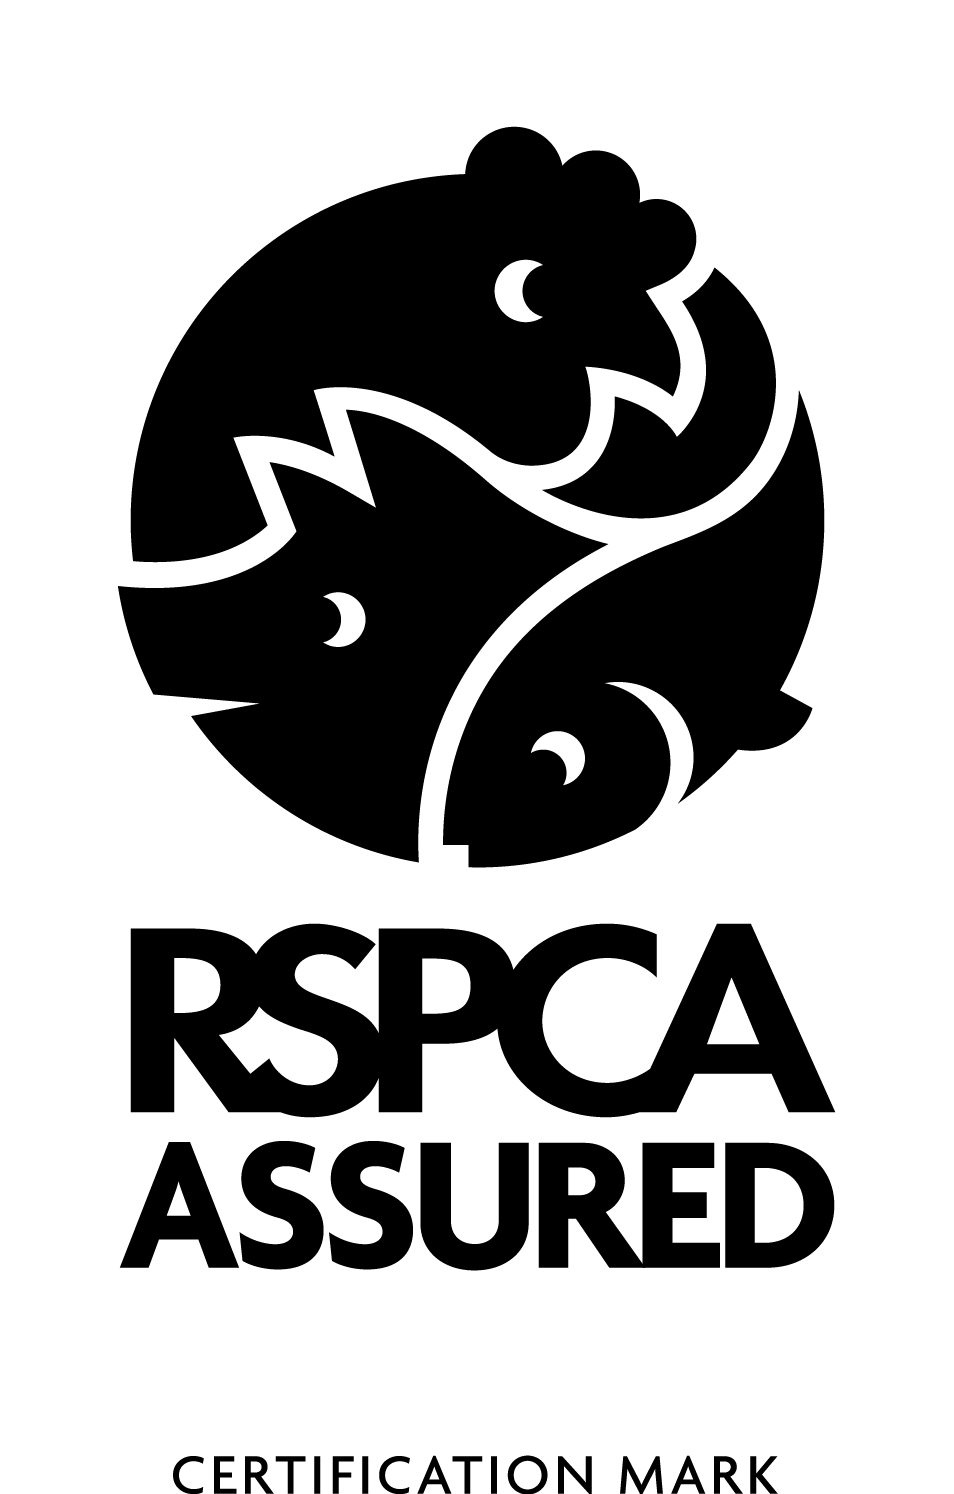 RSPCA Assured logo black